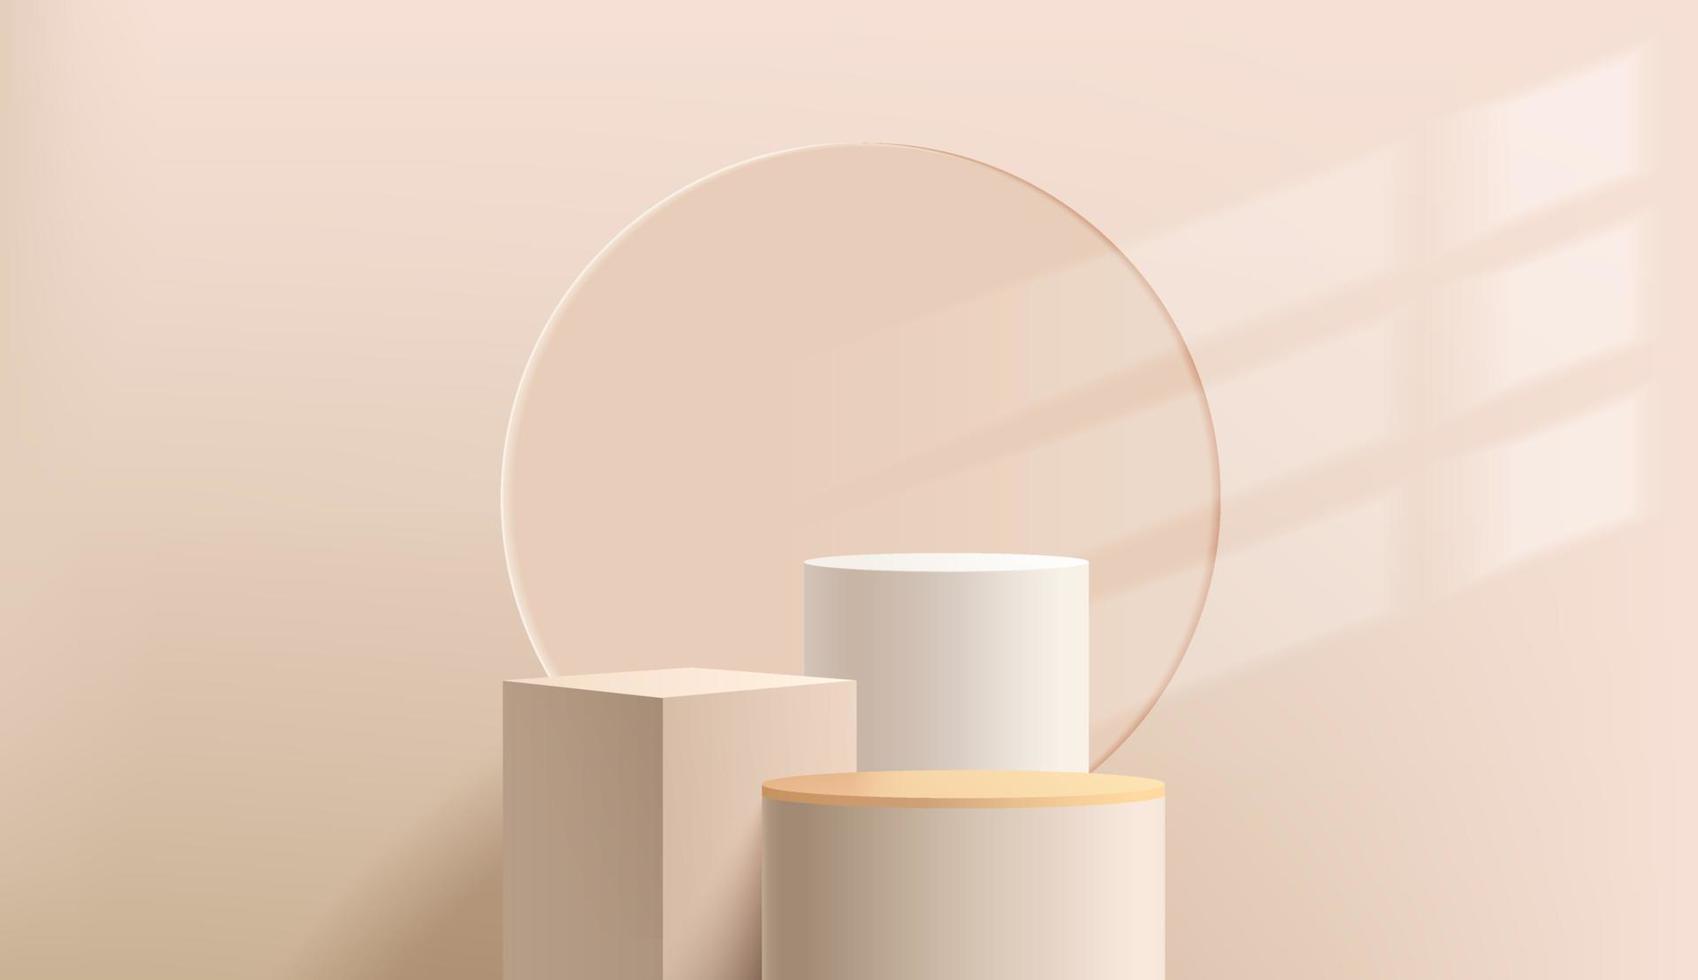 podio con piedistallo cilindro astratto 3d con piattaforma cubo geometrico beige. scena minima della parete marrone chiaro con illuminazione della finestra. rendering vettoriale moderno per la presentazione di prodotti cosmetici.